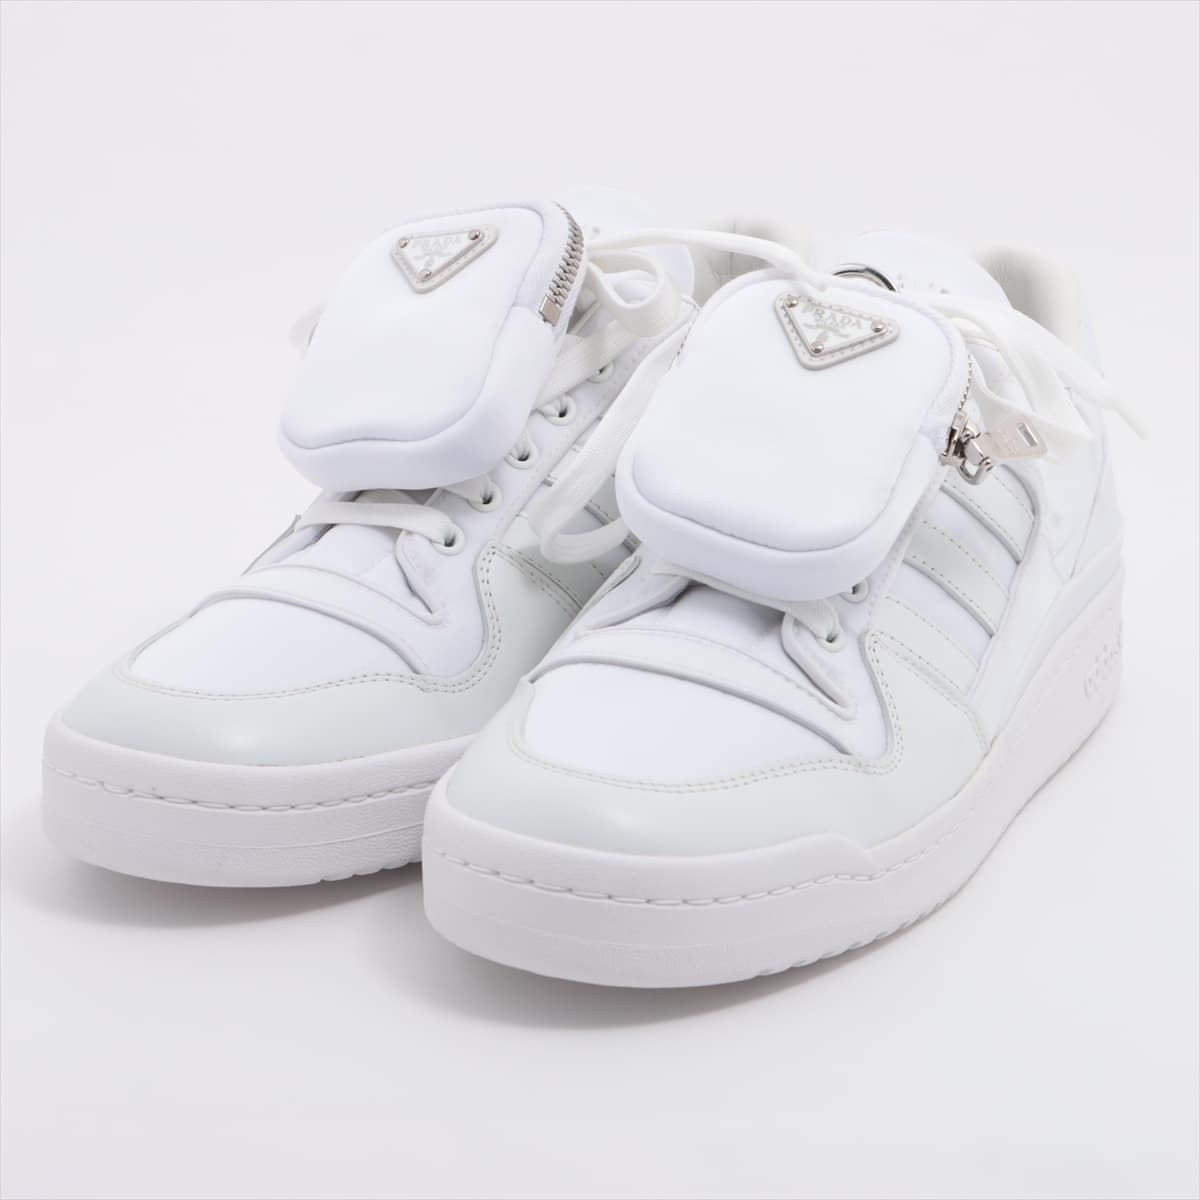 Prada x Adidas Nylon & Leather Sneakers 26.5cm Men's White Renylon For